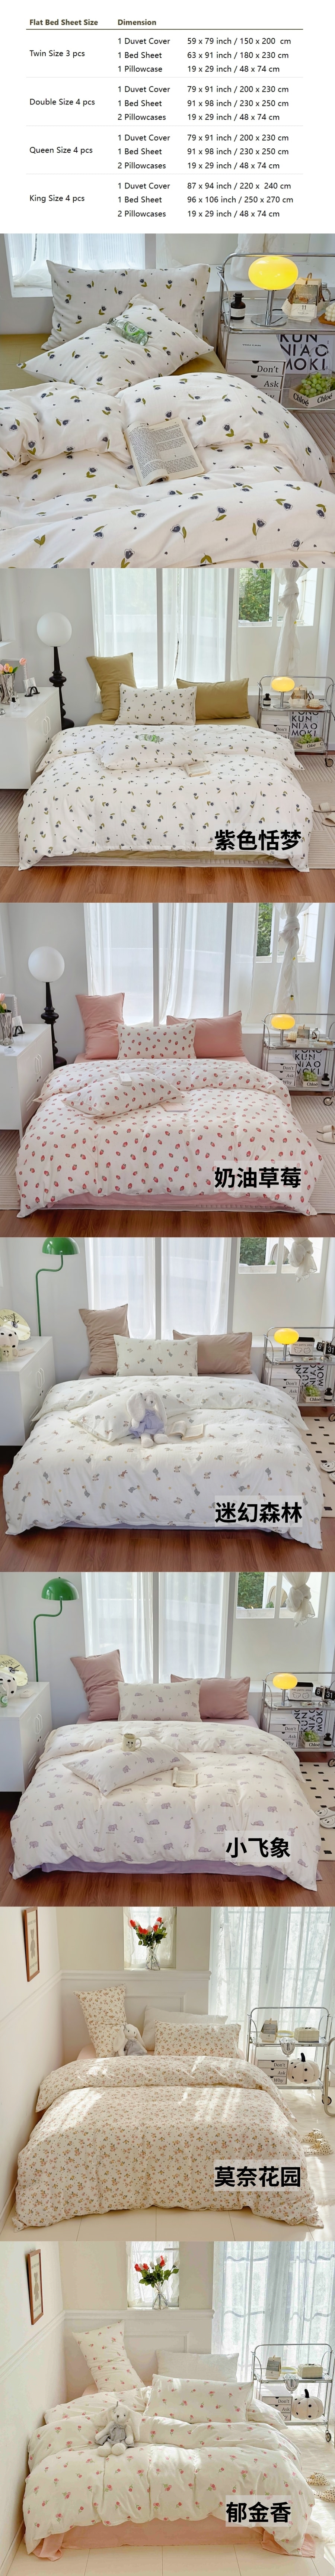 【中国直邮】Lullabuy 莫奈花园 纯棉床上四件套四季床品床单被套家居用品(床单*1+被套*1+枕套*2)奶油草莓 King Size